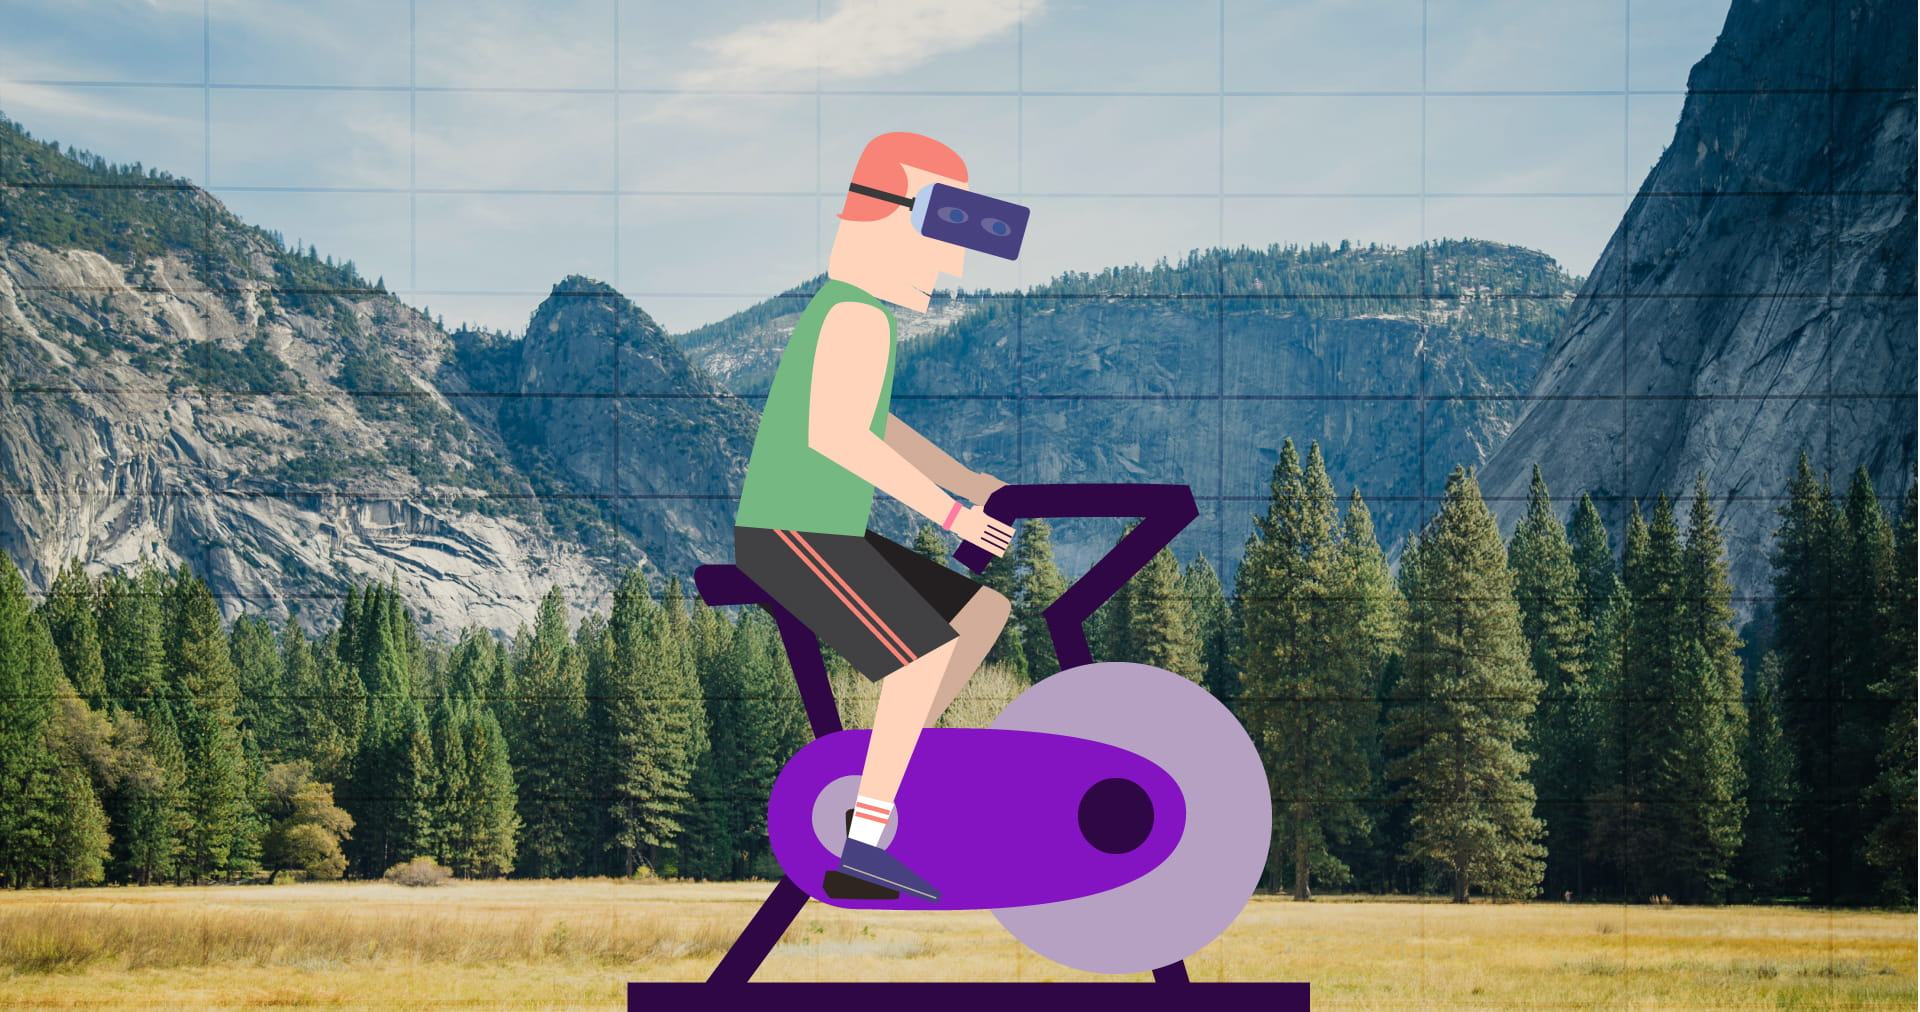 Η εικονική πραγματικότητα μπαίνει στο γυμναστήριο